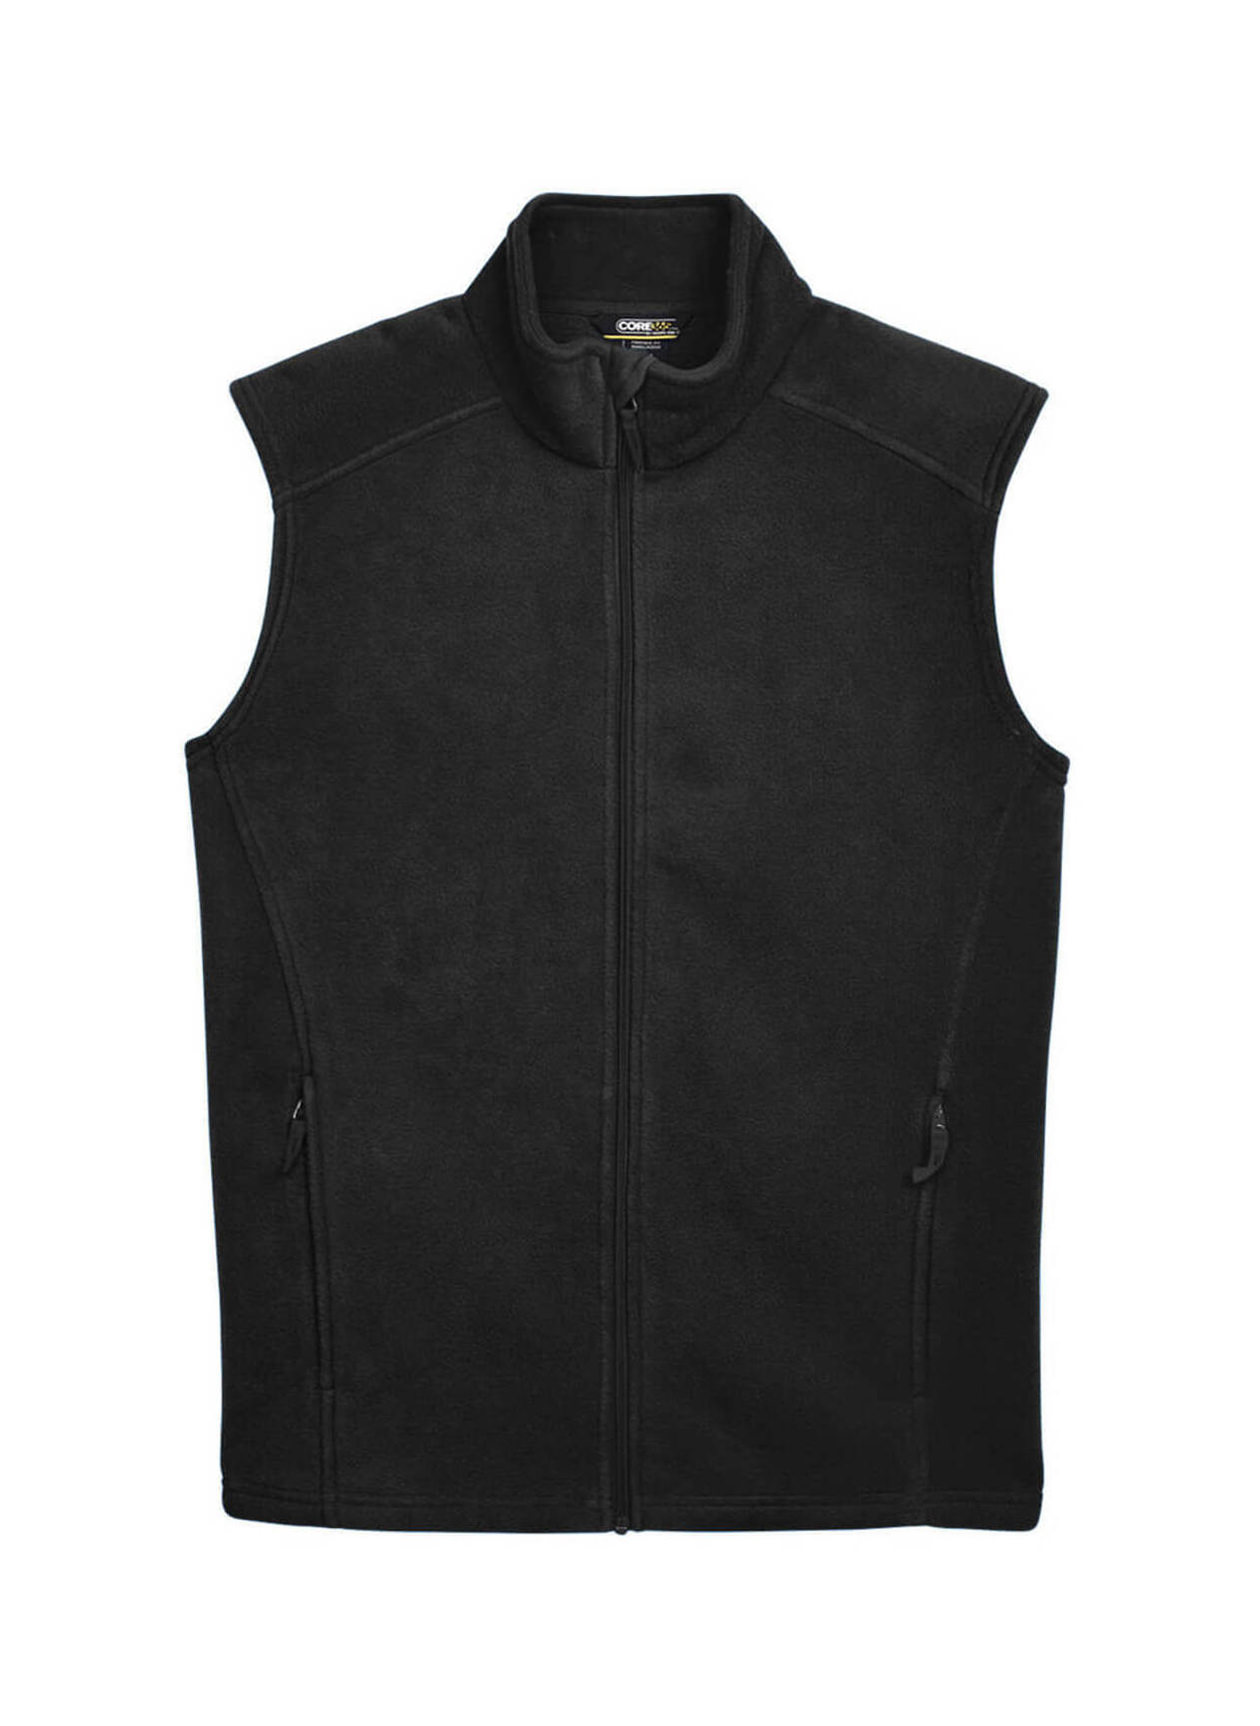 Core 365 Men's Black Journey Fleece Vest